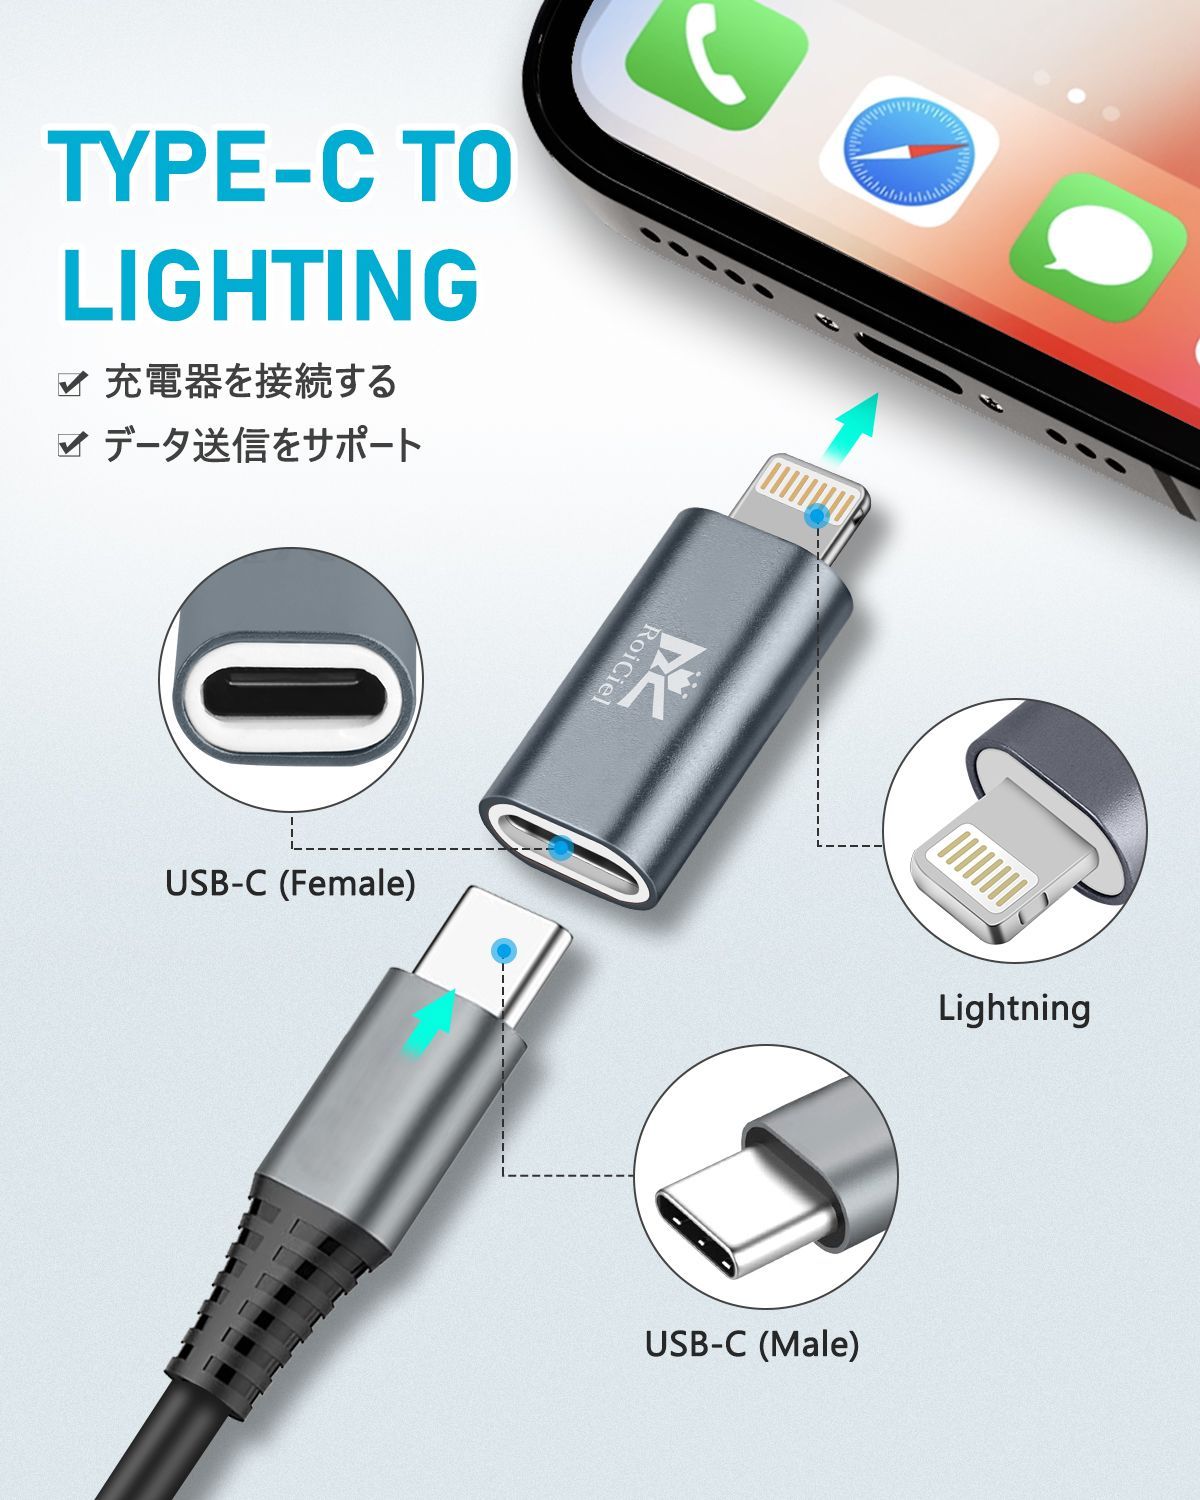 タイプⅭ ライトニング 変換 アダプター type Ⅽ iPhone 充電 黒